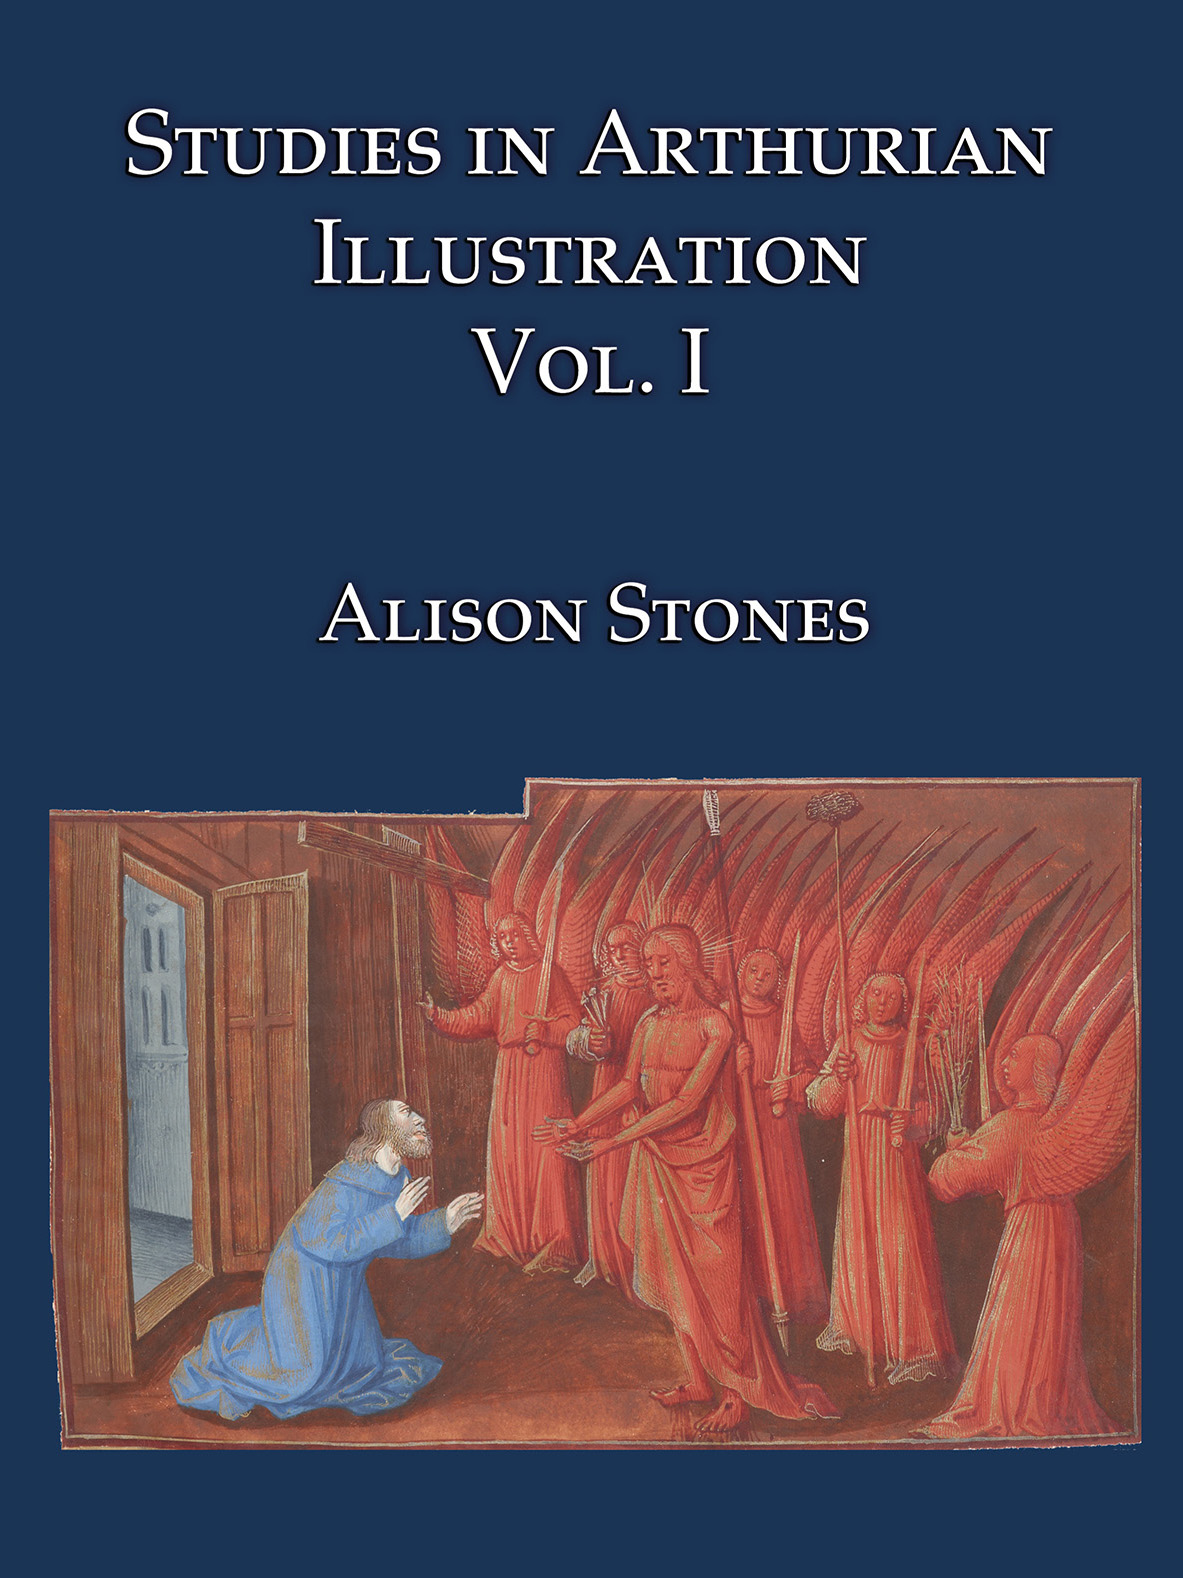 "Studies in Arthurian Illustration"